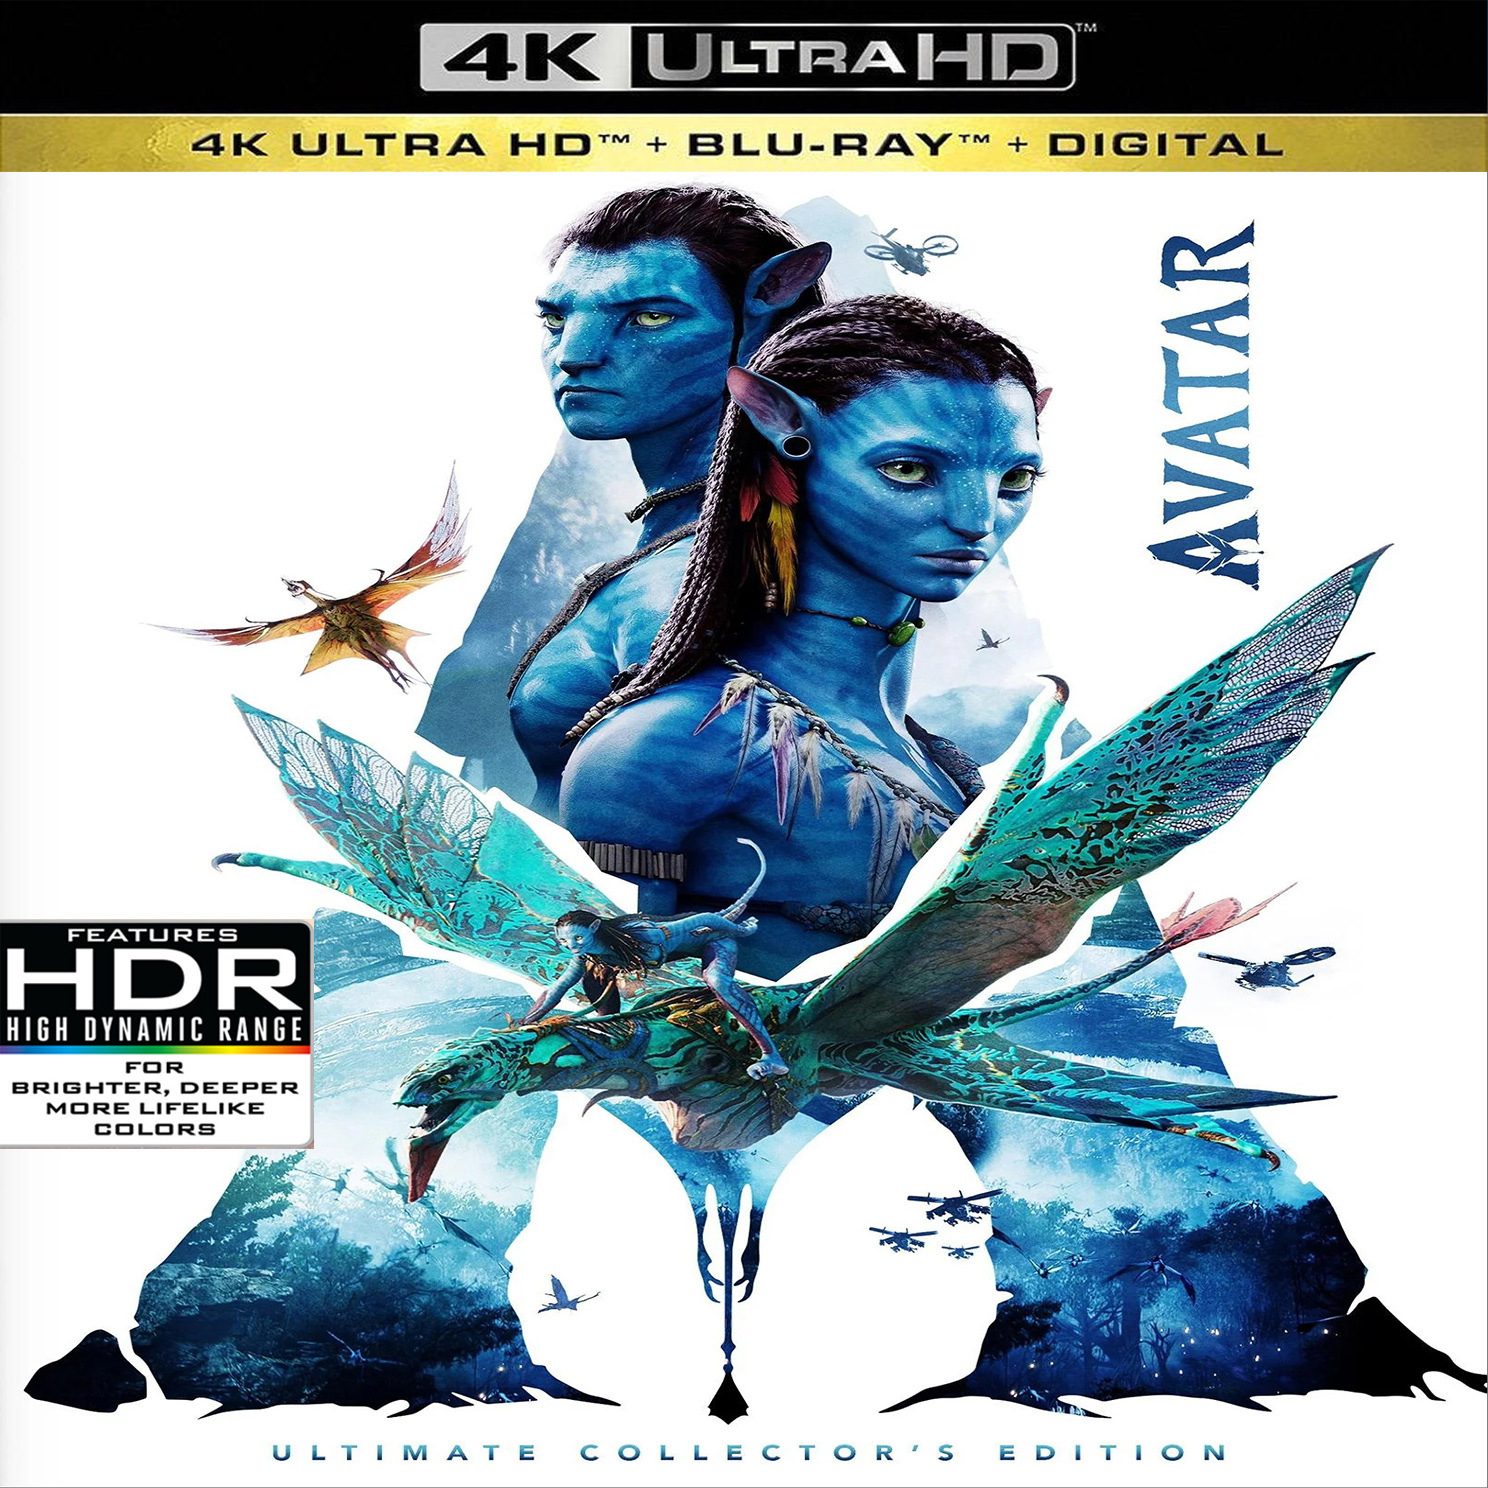 Avatar 2009  IMDb